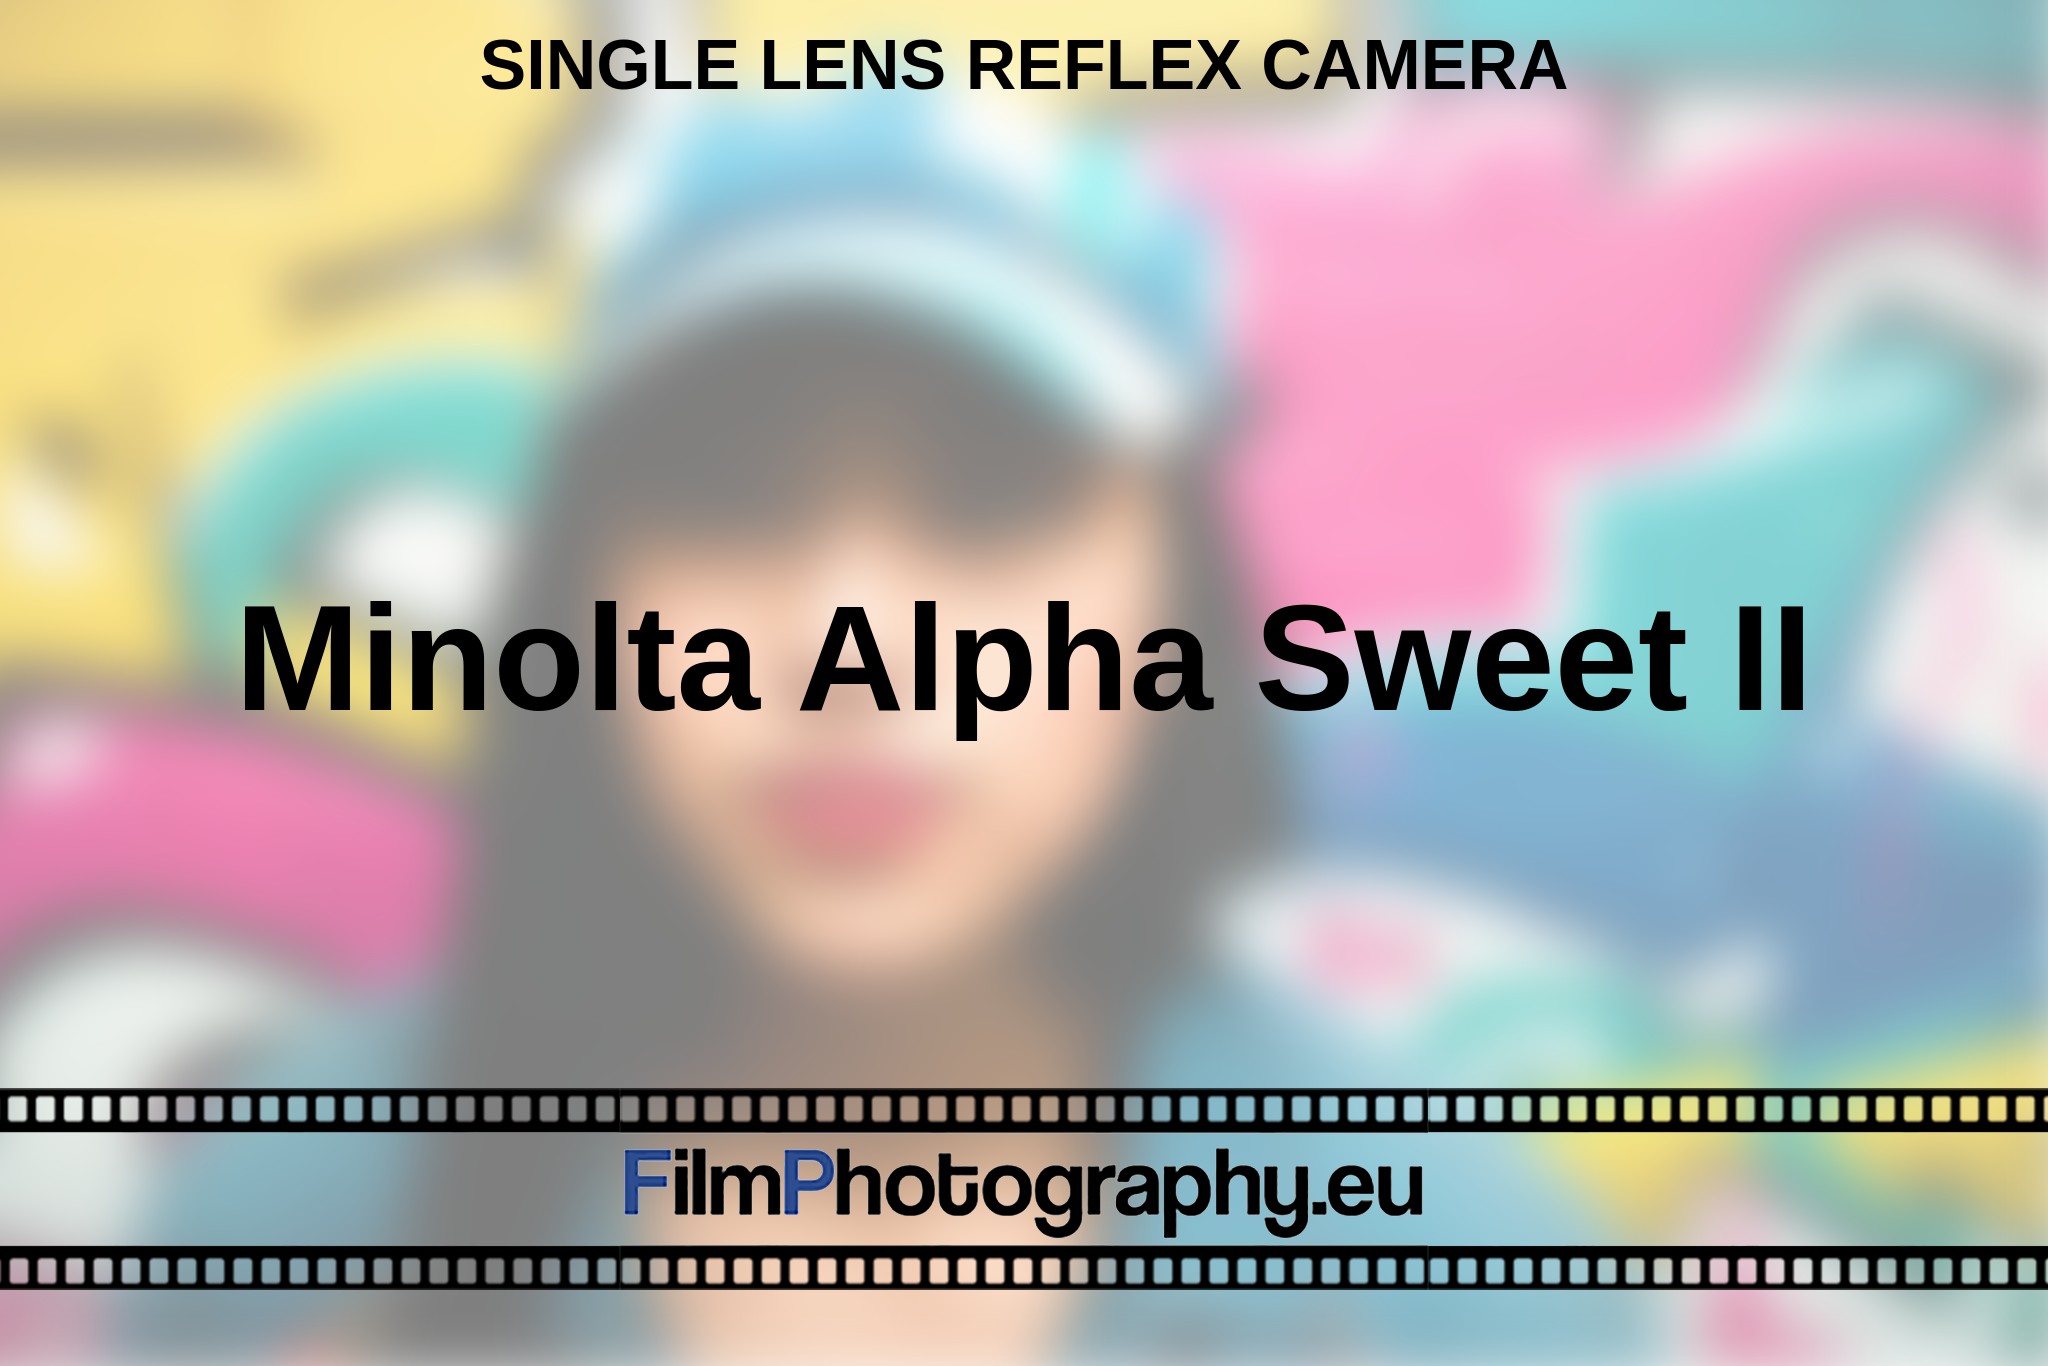 minolta-alpha-sweet-ii-single-lens-reflex-camera-en-bnv.jpg